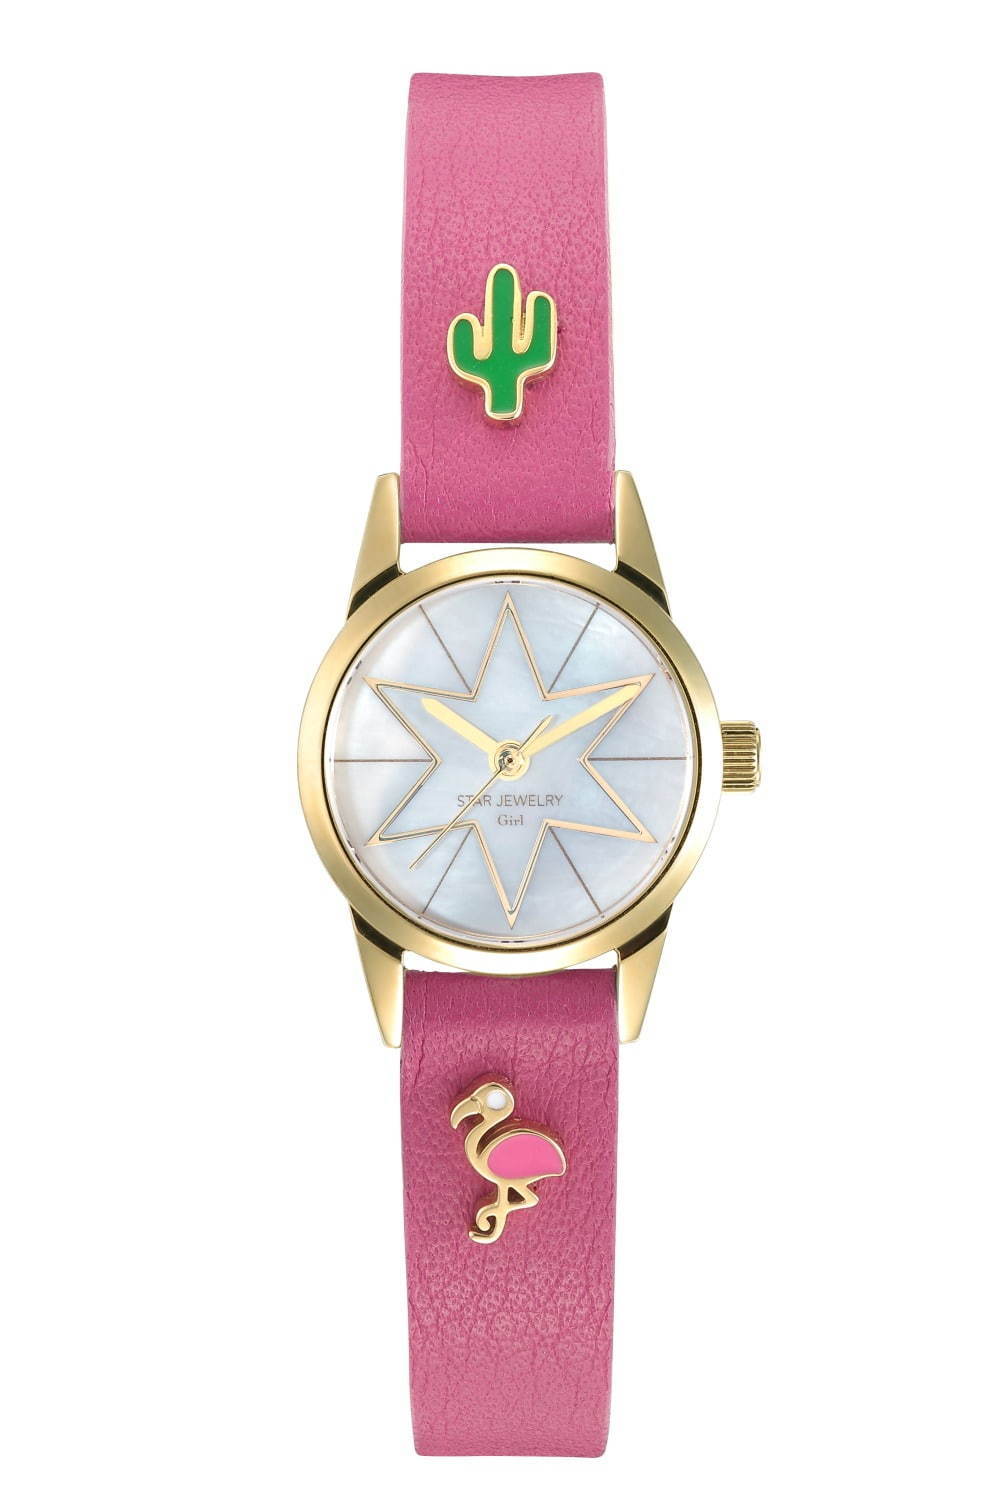 スタージュエリー ガール“カスタマイズ”を楽しむ新作腕時計 